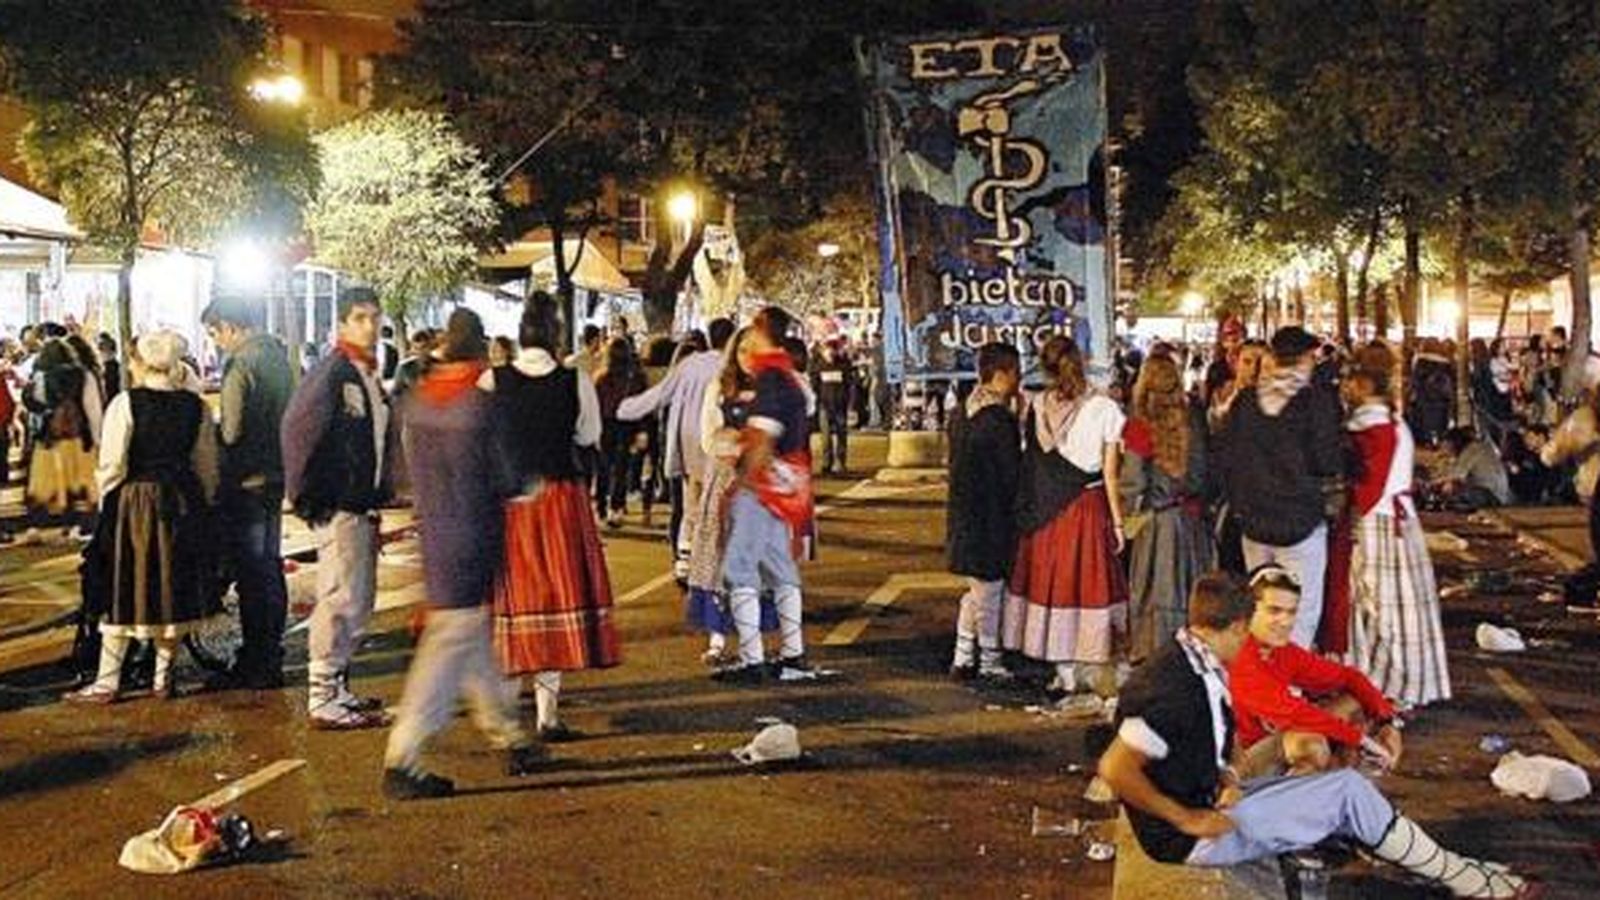 Foto: Imagen de una pancarta a favor de ETA durante las fiestas de Vitoria en el País Vasco. (Covite)